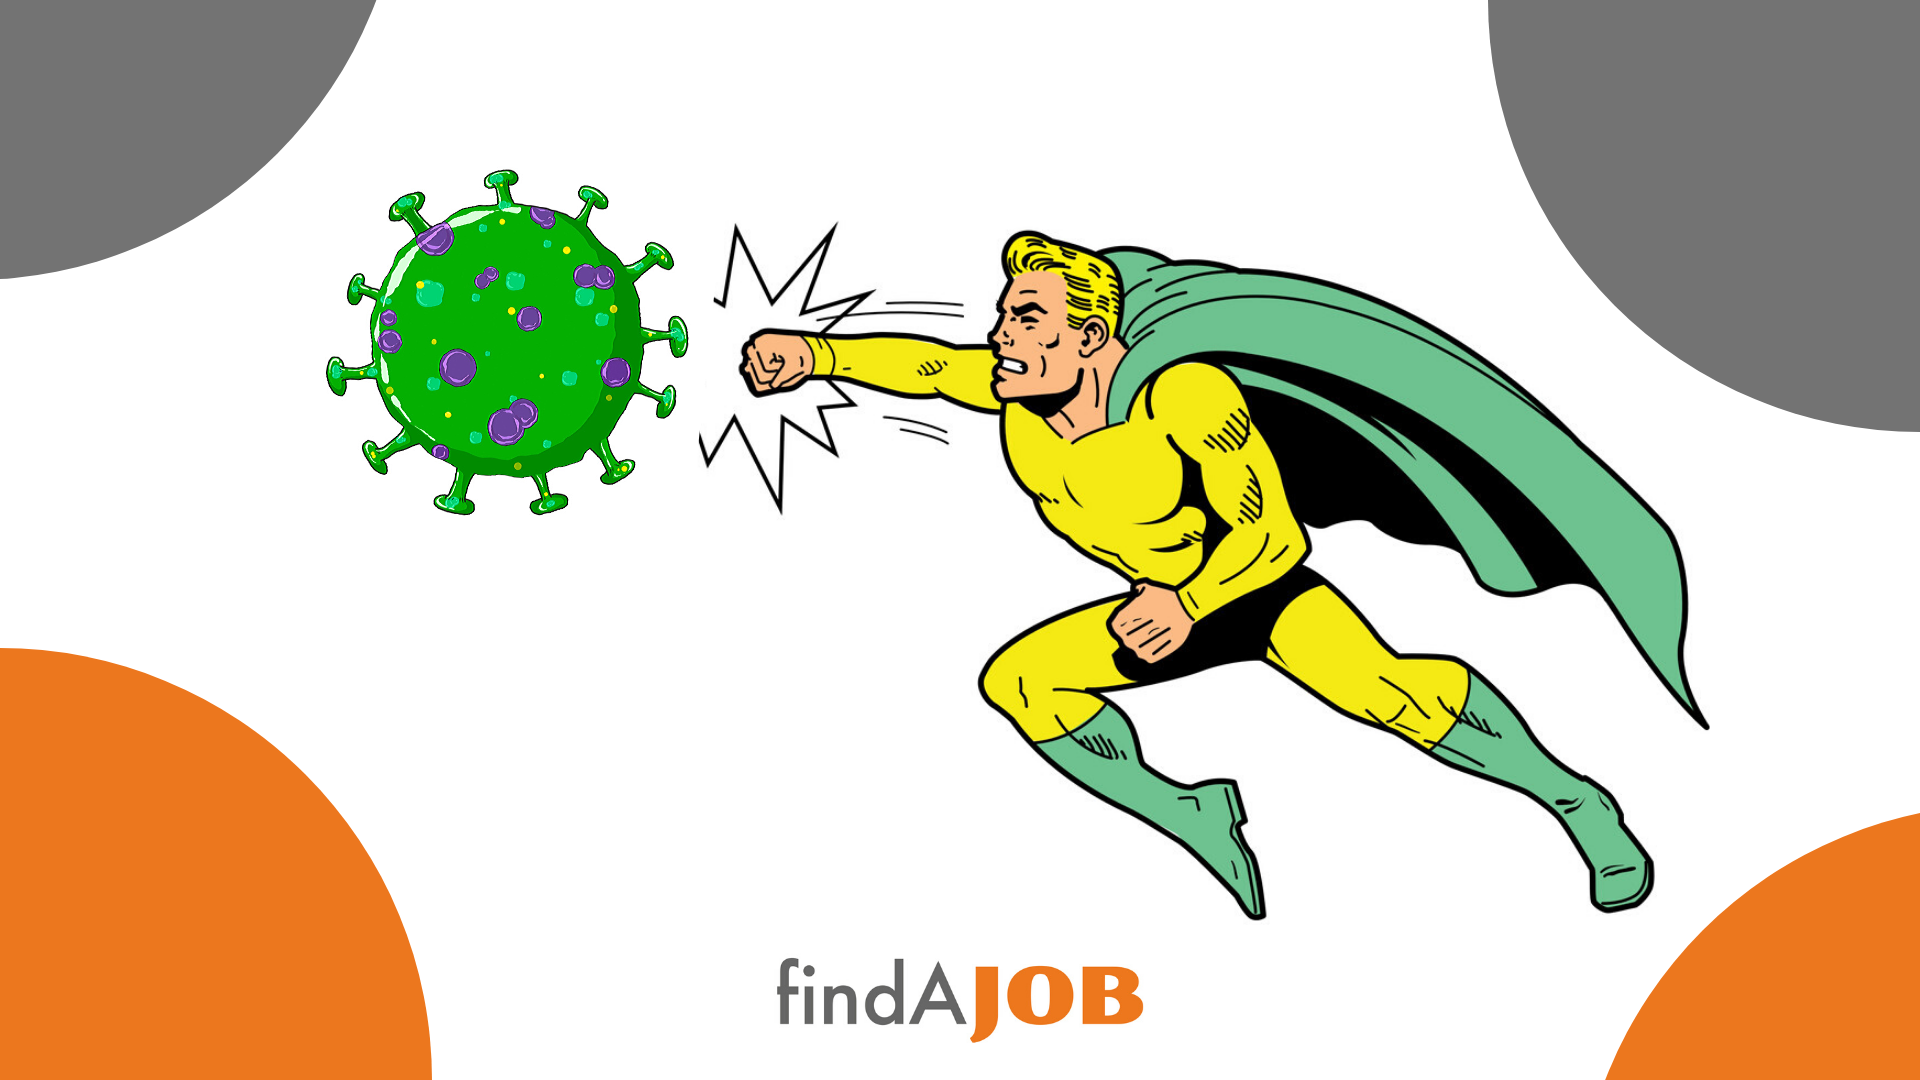 Job Seeking vs Coronavirus Outbreak